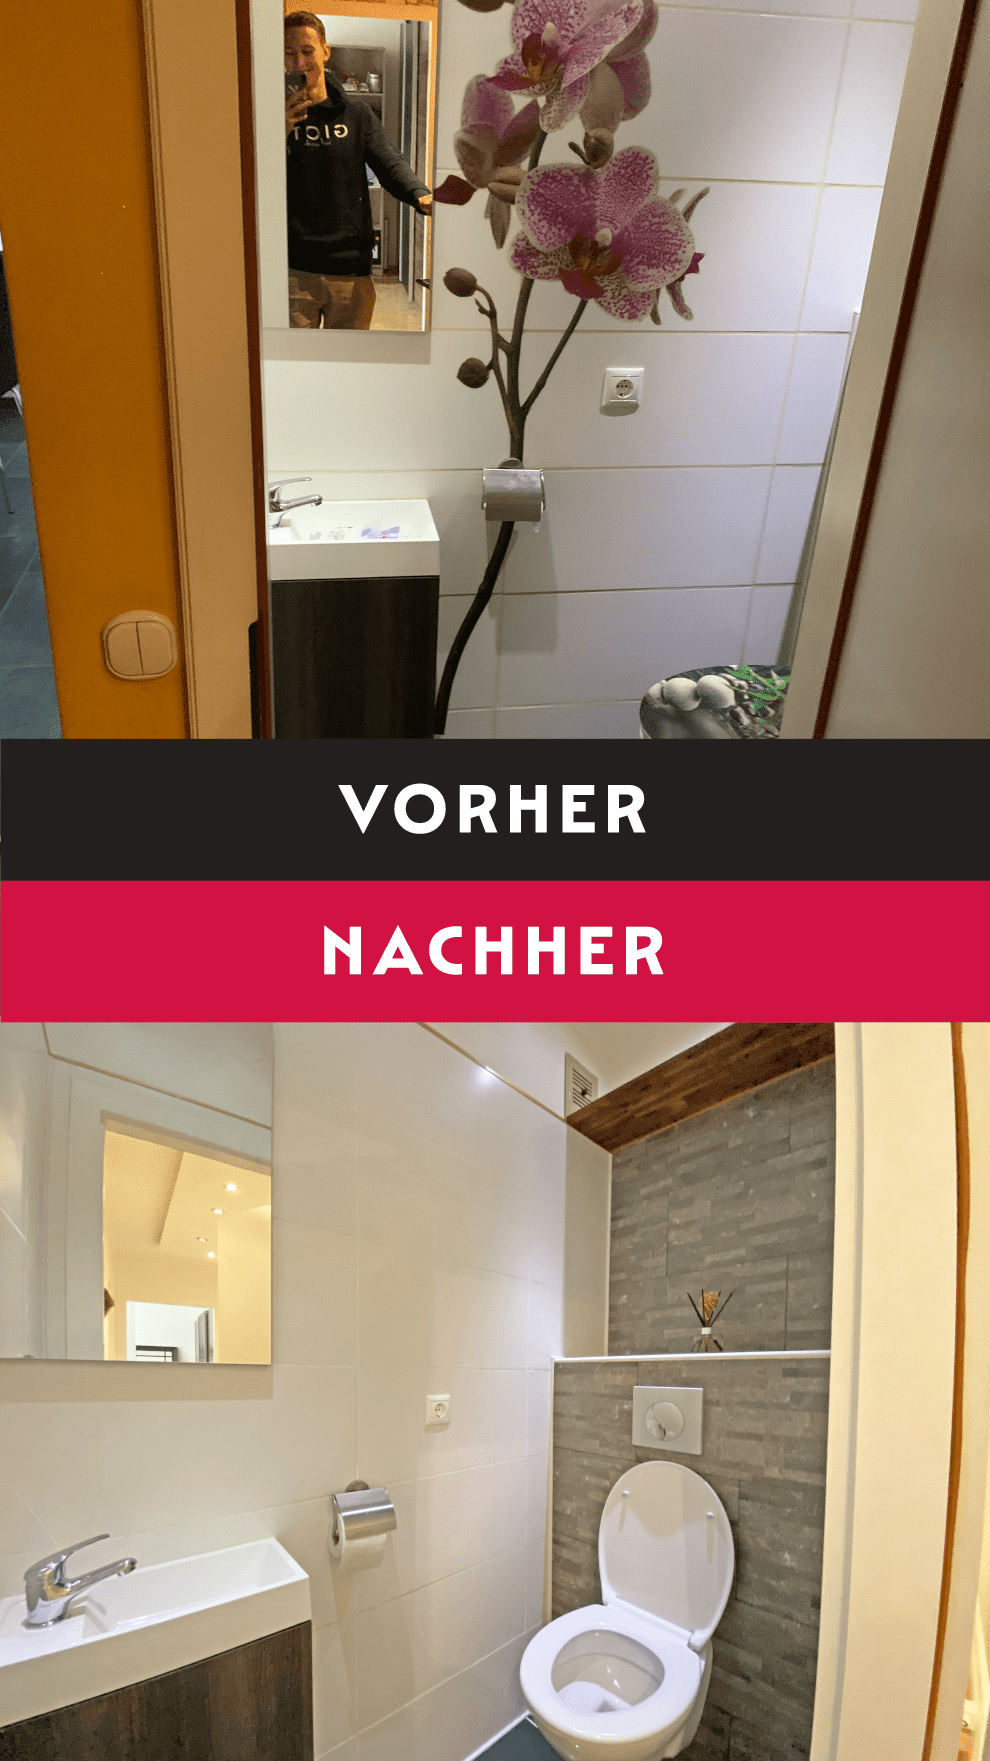 Eine Fotomontage mit Vorher-Nachher-Vergleich eines hellen Badezimmers mit grauer Wandgestaltung und dezenter Belichtung